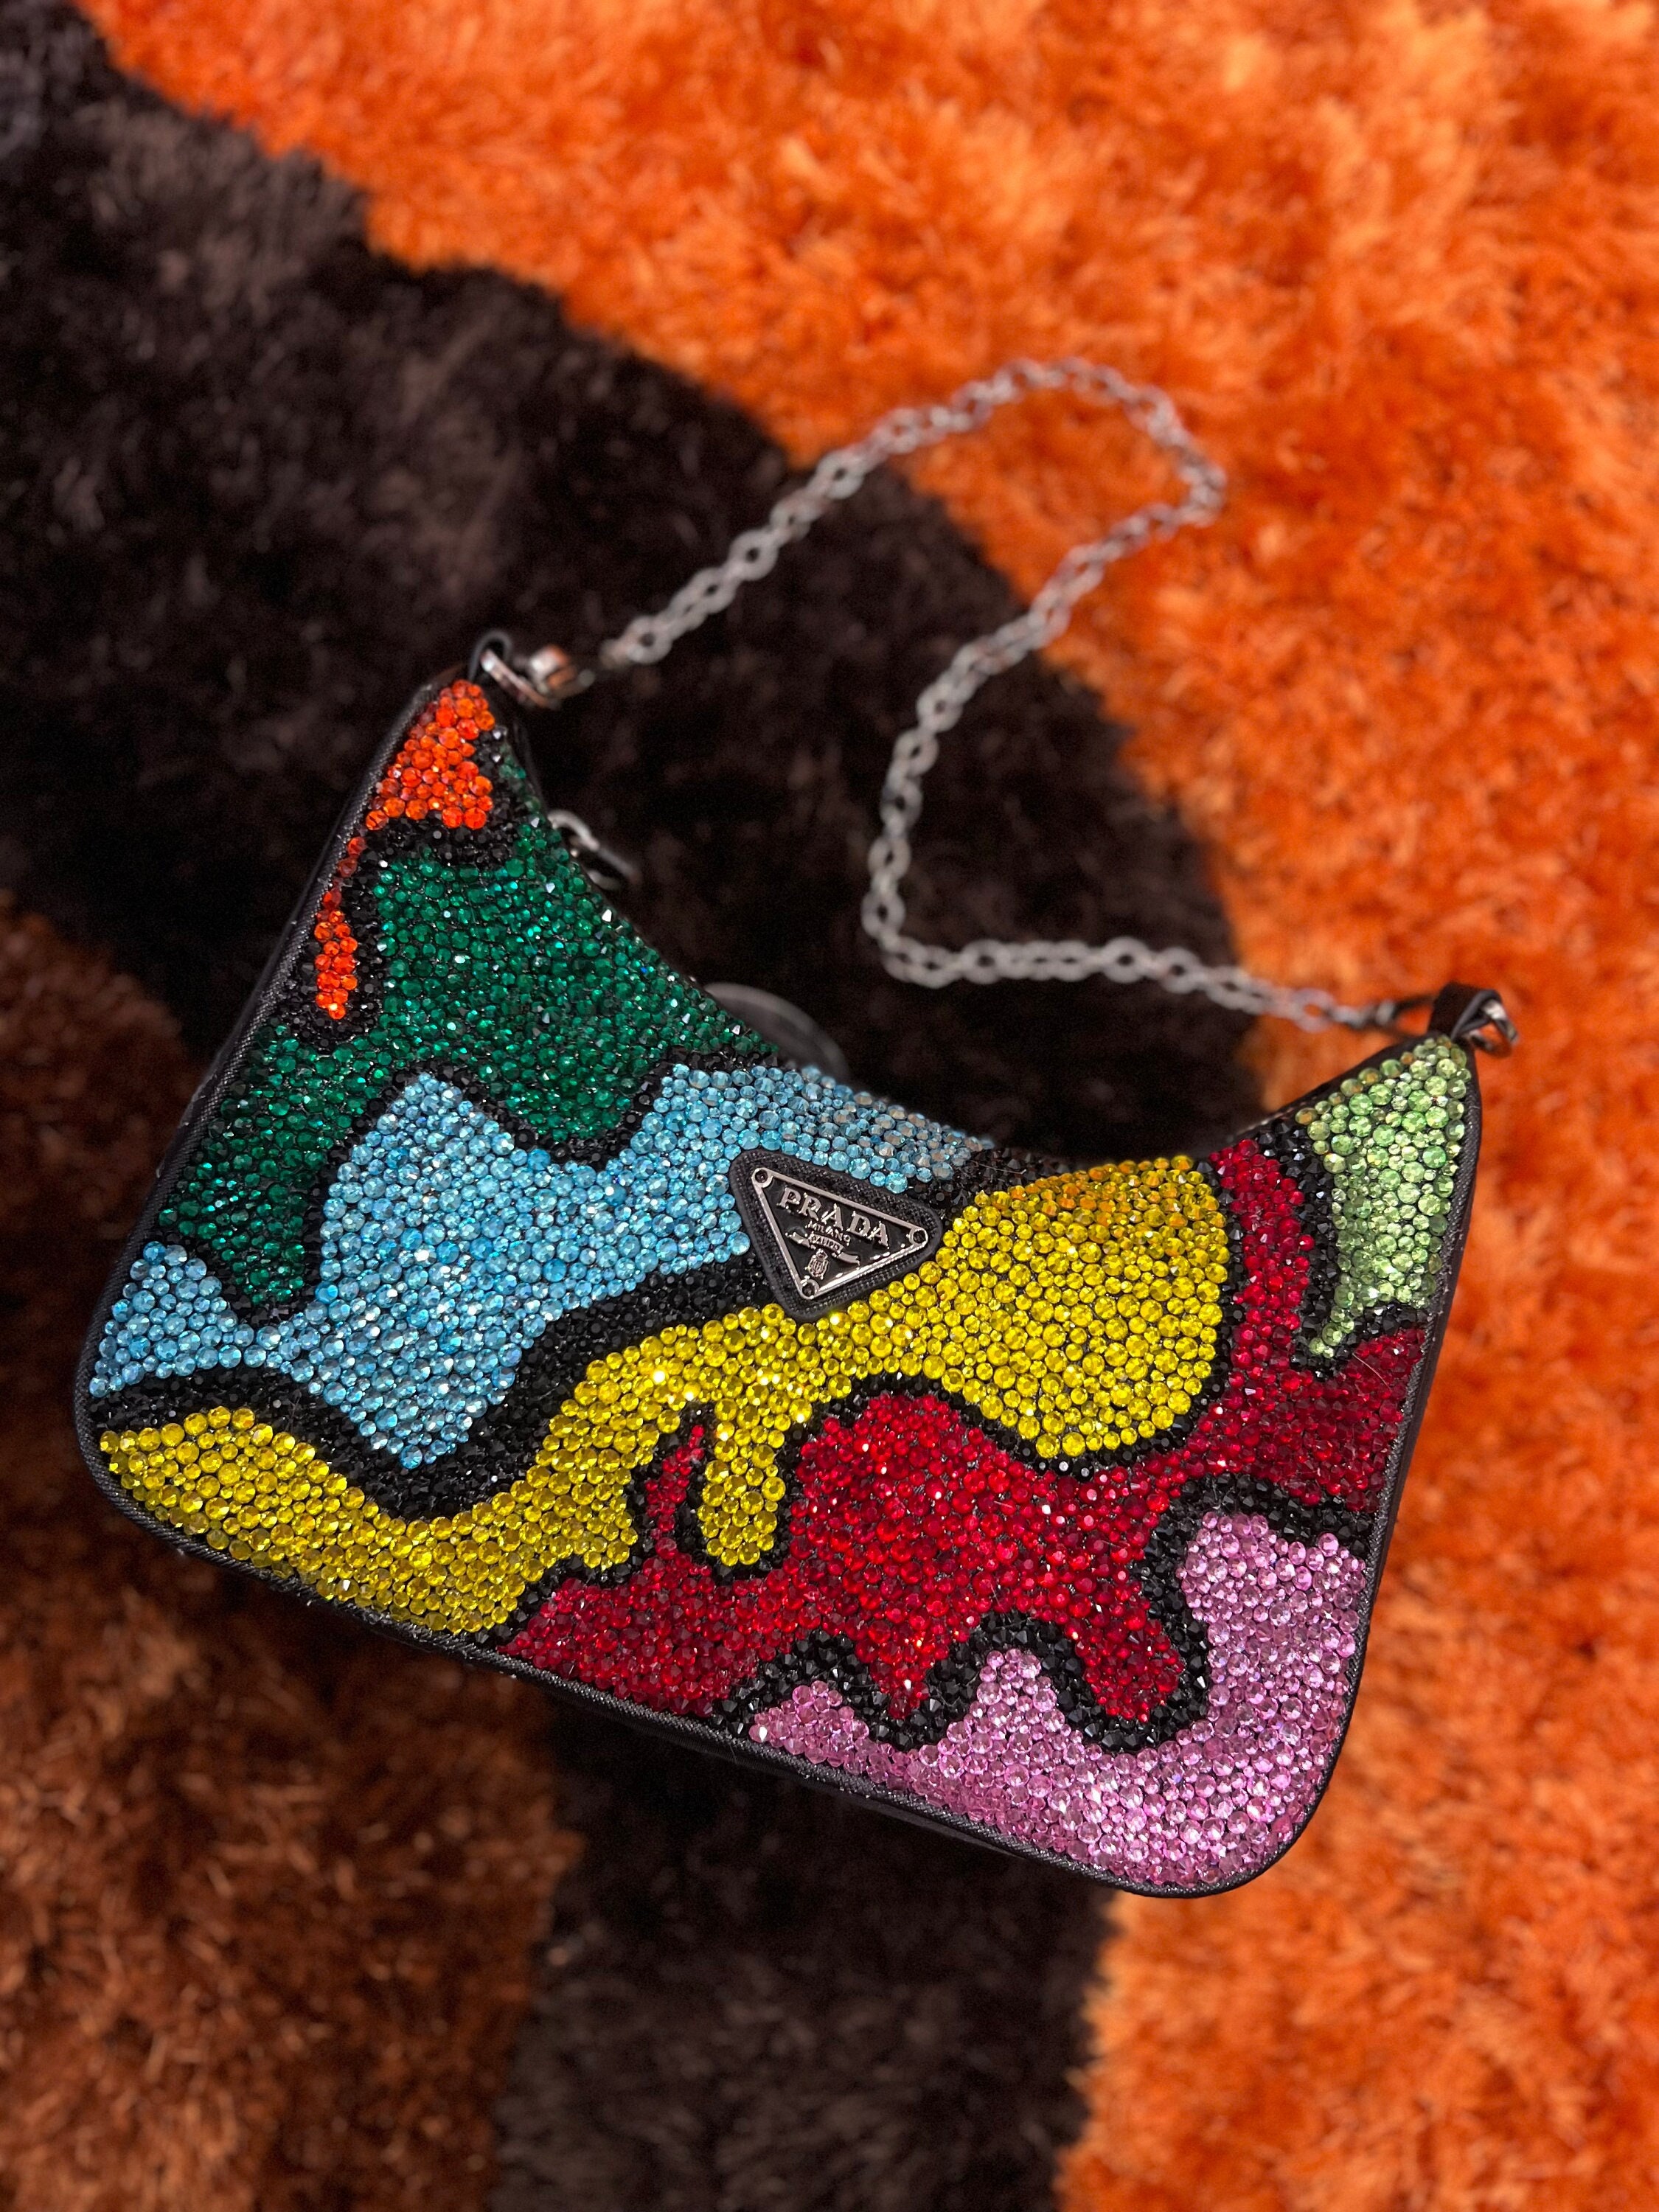 Supreme Chip Bag – Glitzy Glamour Designs